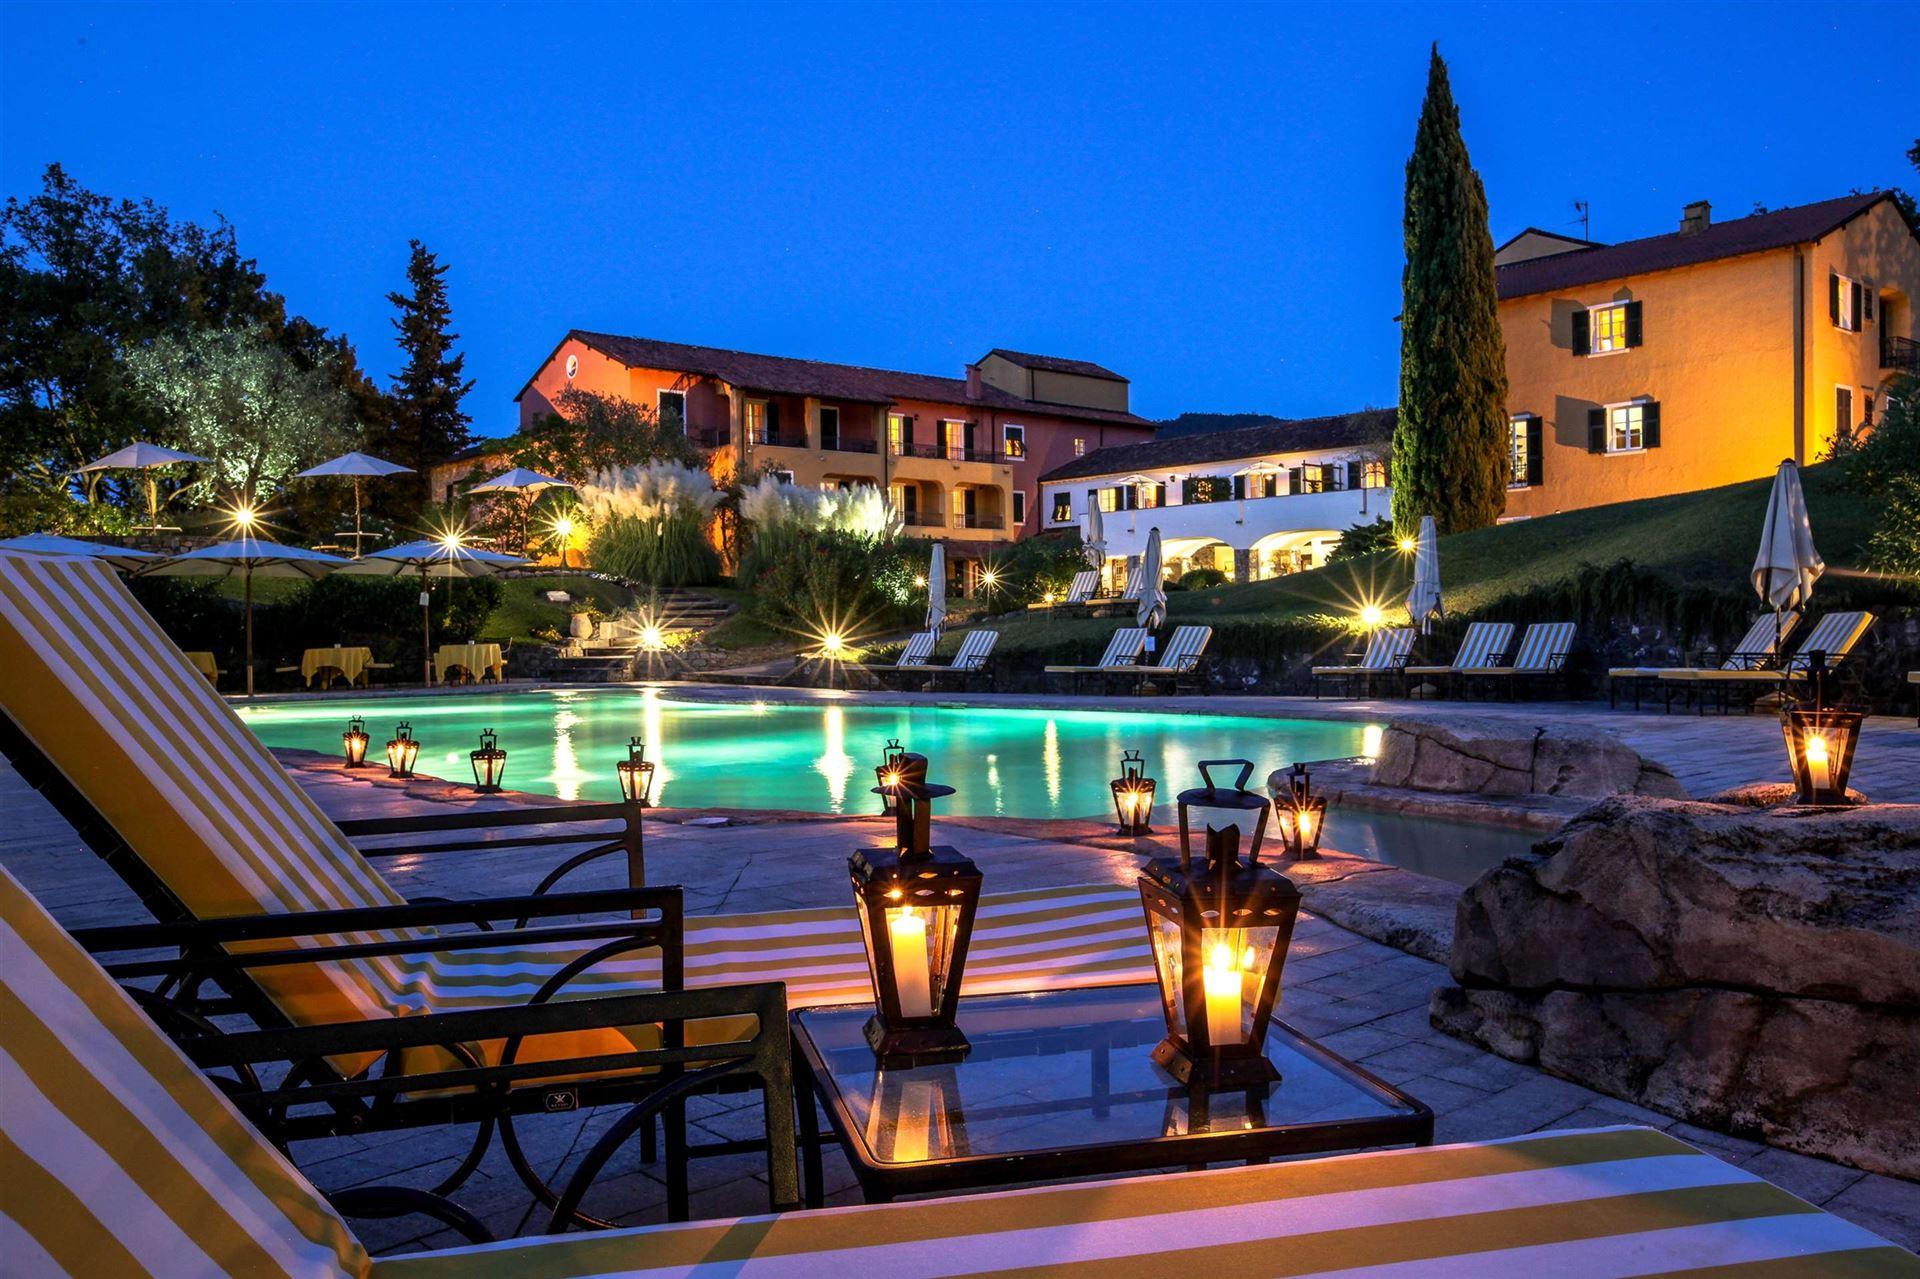 La Meridiana Hotel Resort & Golf luxe hotel deals